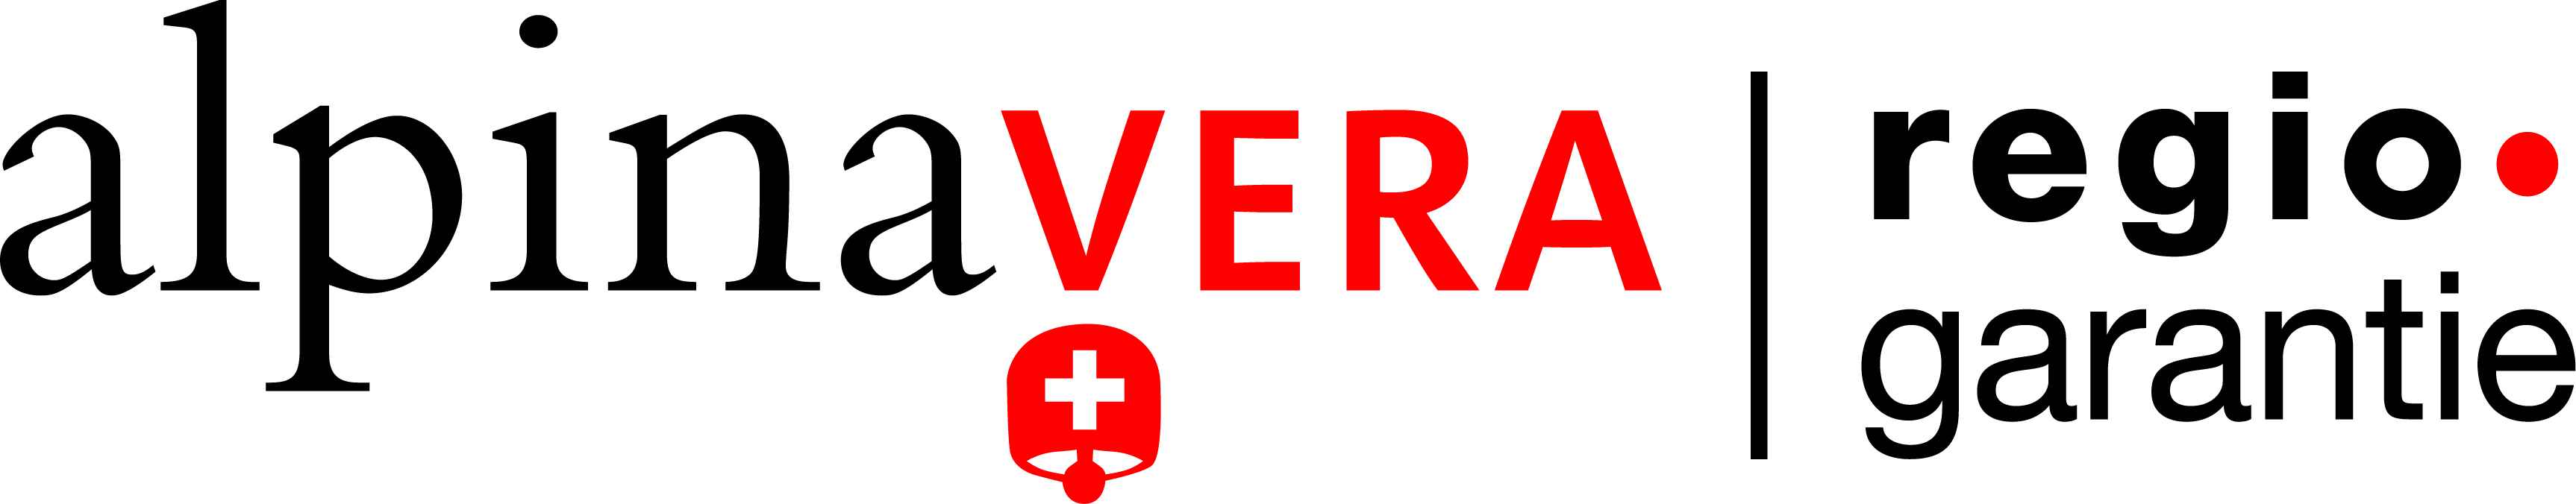 Logo Marchio regionale: alpinavera